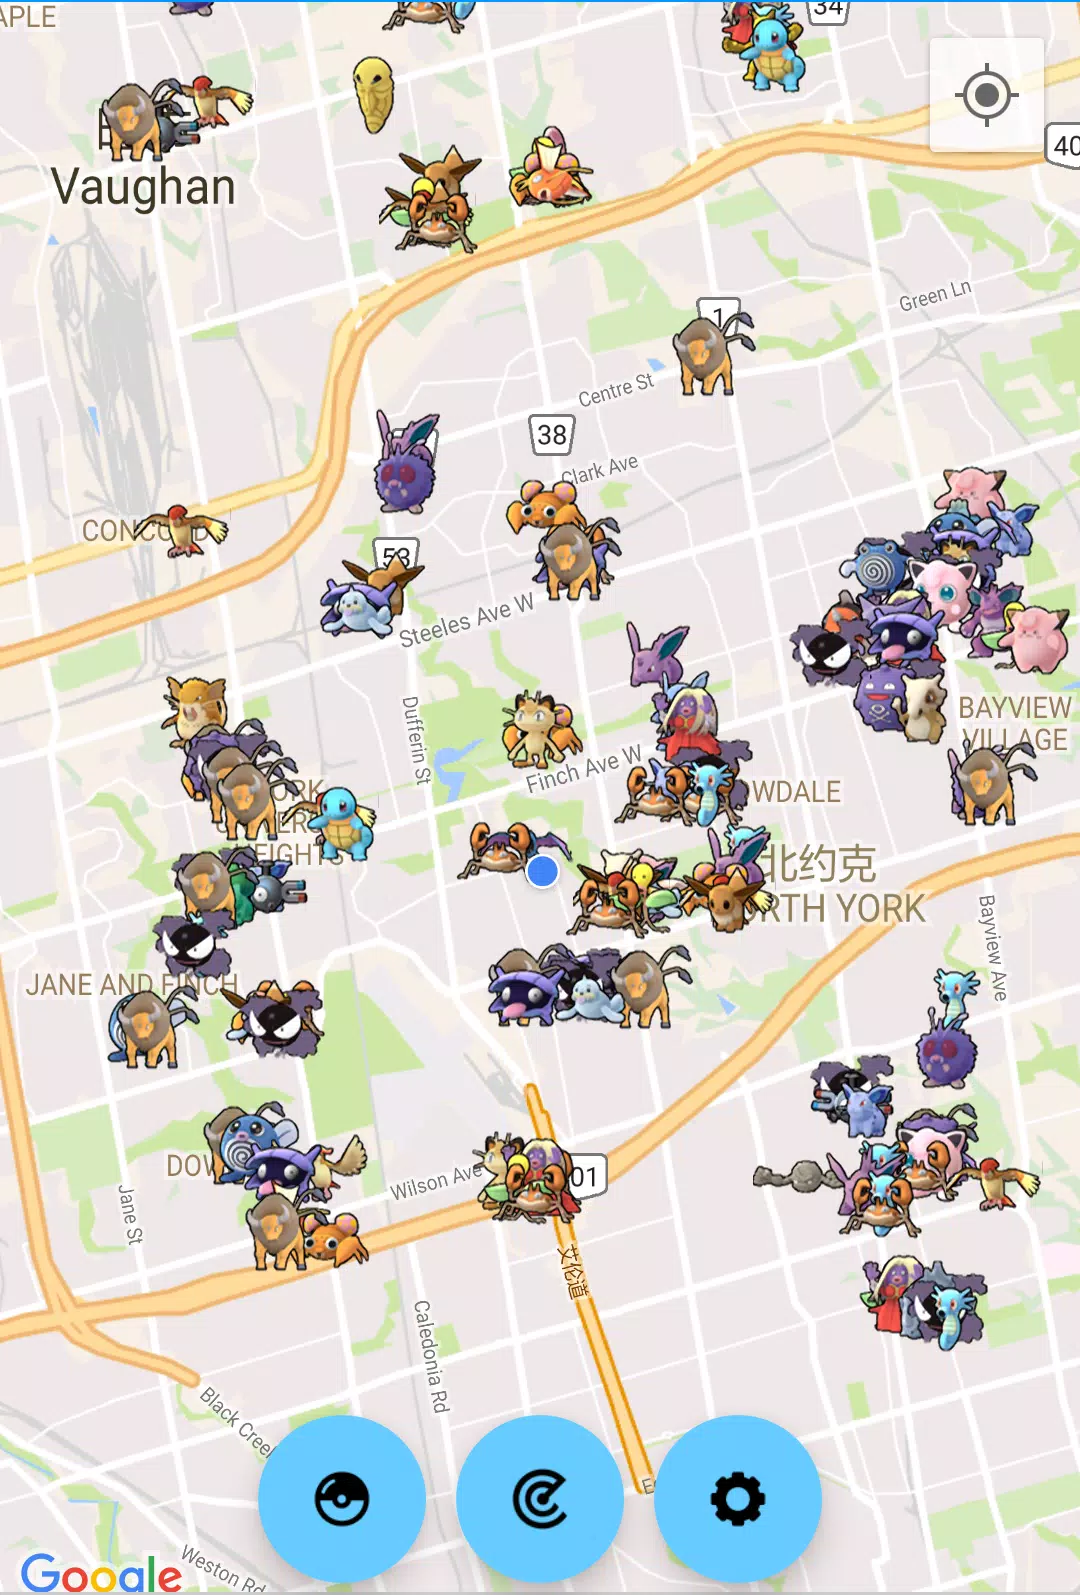 Pokewhere: radar e mapa mostram pokémons raros em Pokémon GO - Mobile Gamer